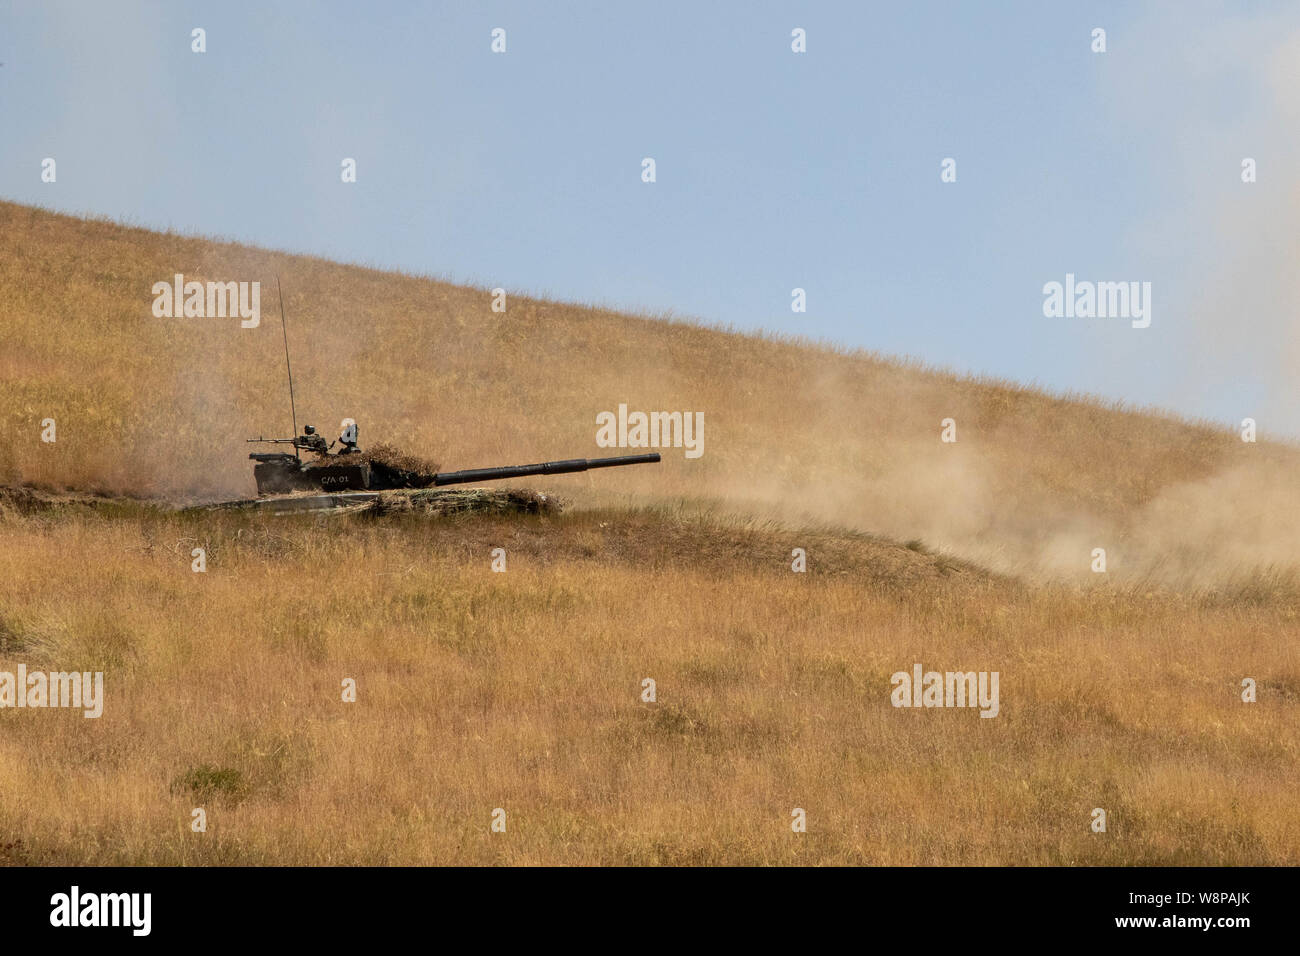 Une Force de défense géorgien T-72 char de combat principal tire sur cibles simulé sur une plage pendant l'esprit agile 19 cérémonie de clôture de l'exercice de tir réel, le 9 août 2019, à la formation Orpholo, Géorgie. AsG19 est un exercice multinational interarmées, co-dirigé par l'armée américaine et les Forces de défense de l'Europe. Se produisant le 27 Juillet à Août 9, 2019, l'exercice de brigade comprend un exercice de poste de commandement, la formation sur le terrain de l'exercice, et d'incendies. Améliore l'esprit agile, géorgien, U.S. forces des pays alliés et des pays partenaires, l'interopérabilité et la létalité des préparation dans un environnement d'entraînement réaliste. ( Banque D'Images